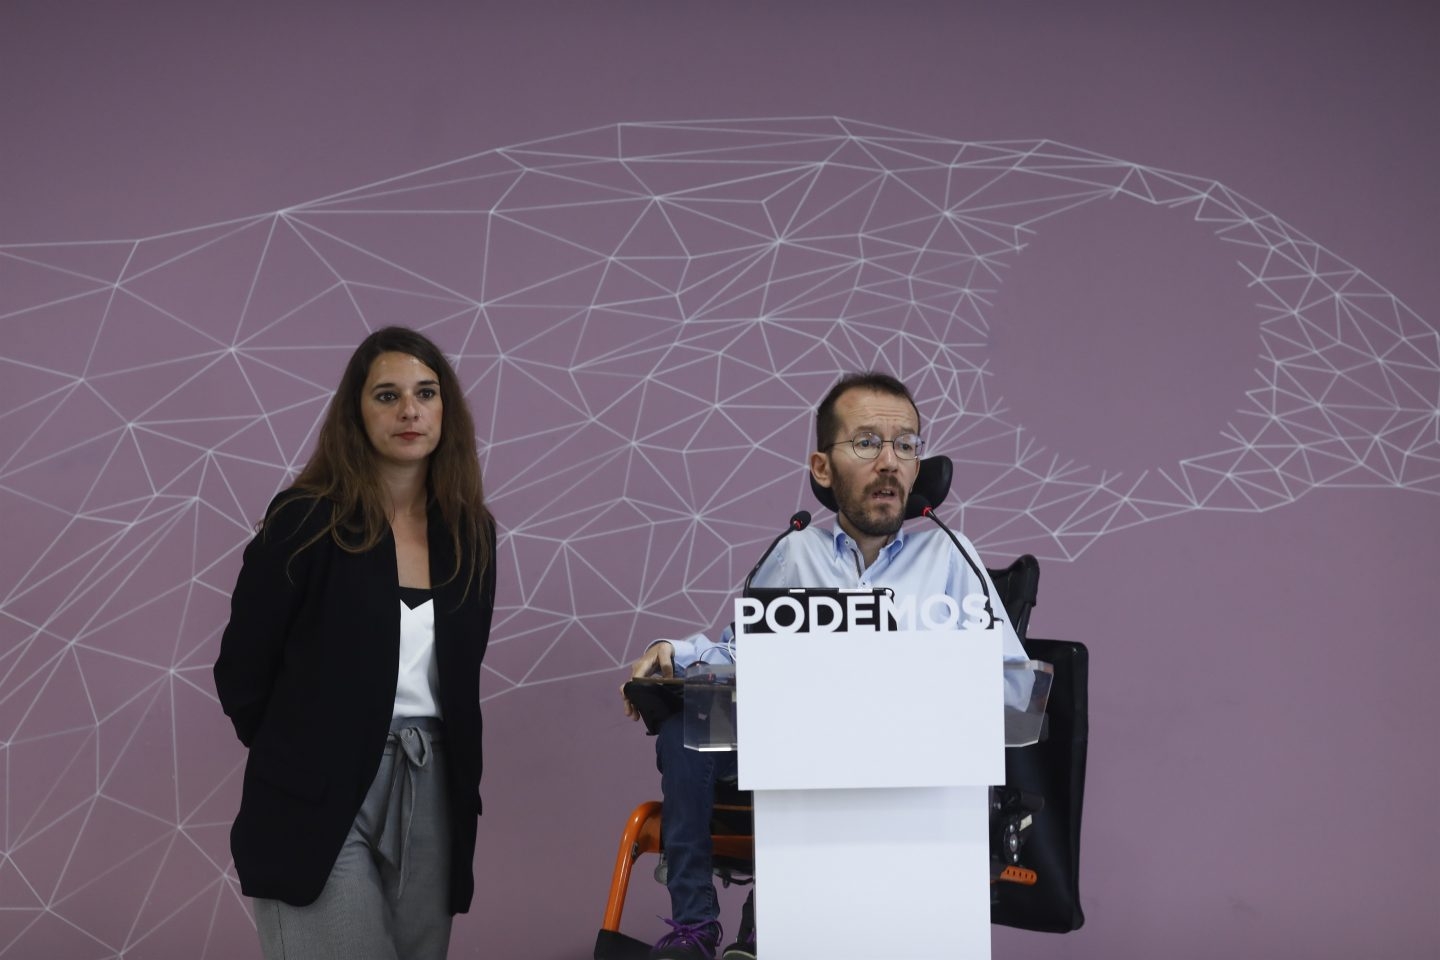 Los portavoces de la ejecutiva de Podemos, Noelia Vera y Pablo Echenique, abogan por frenar a Marine Le Pen.